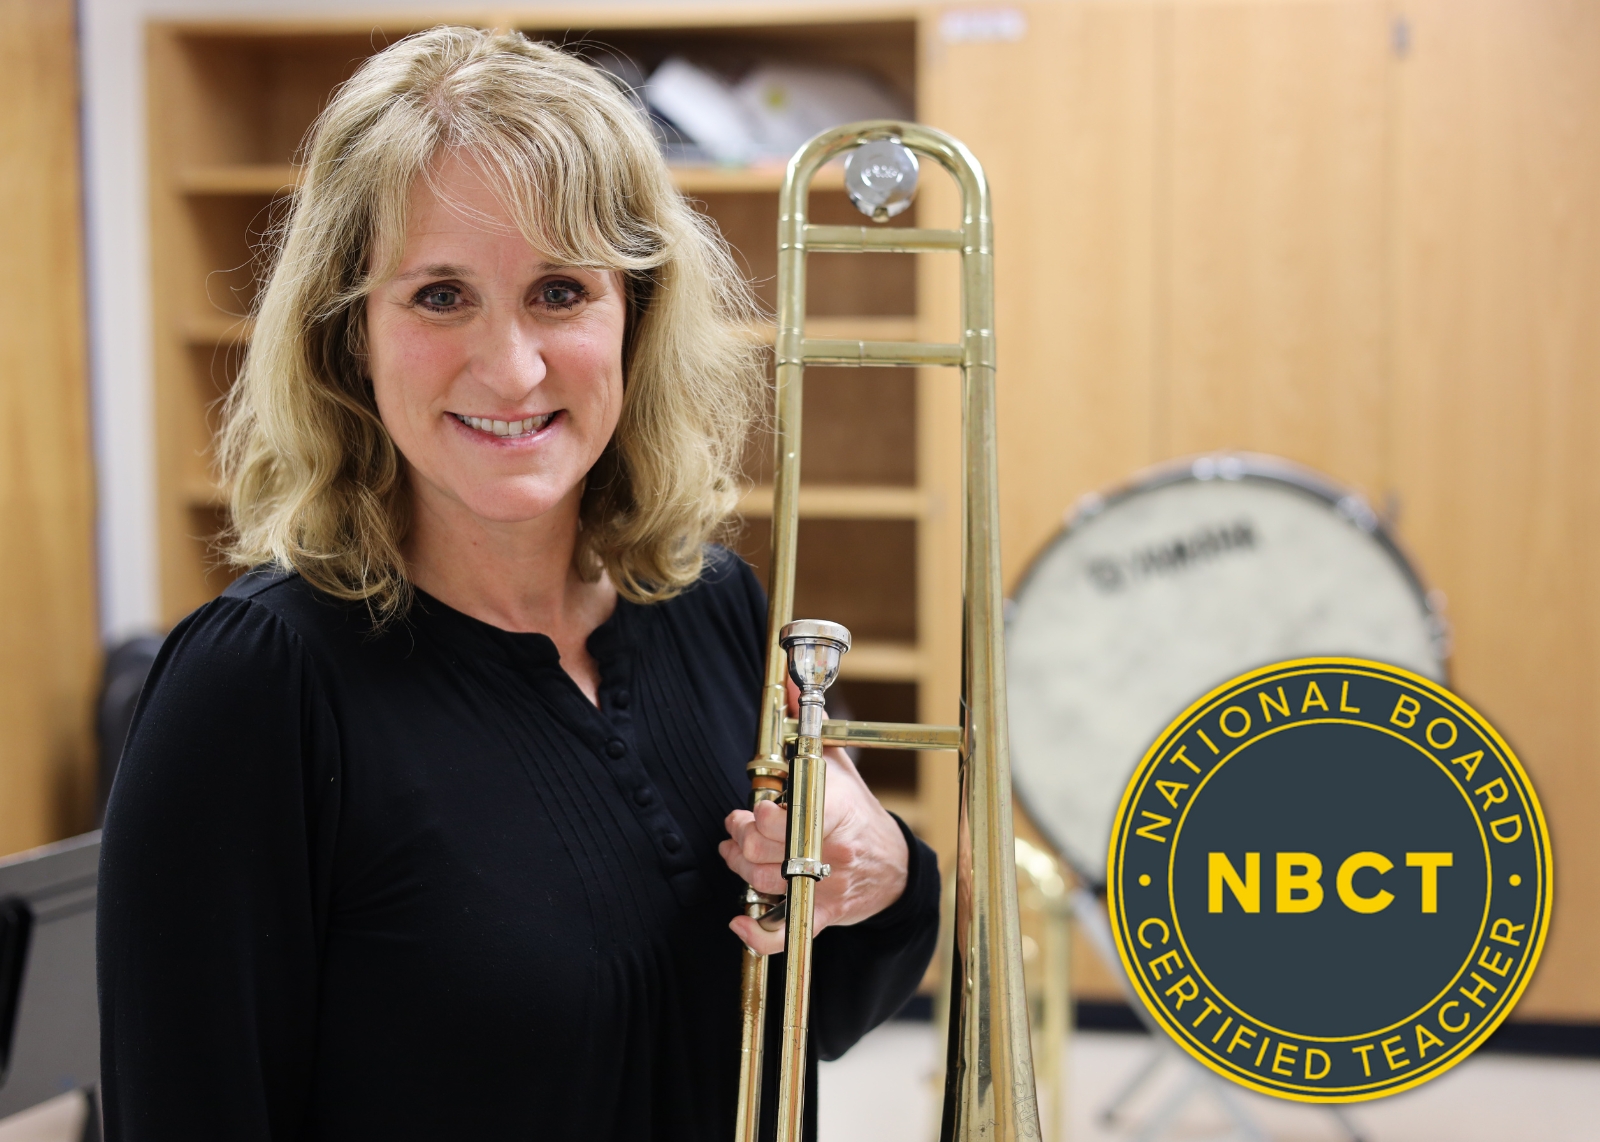 music teacher smiling holding a trombone